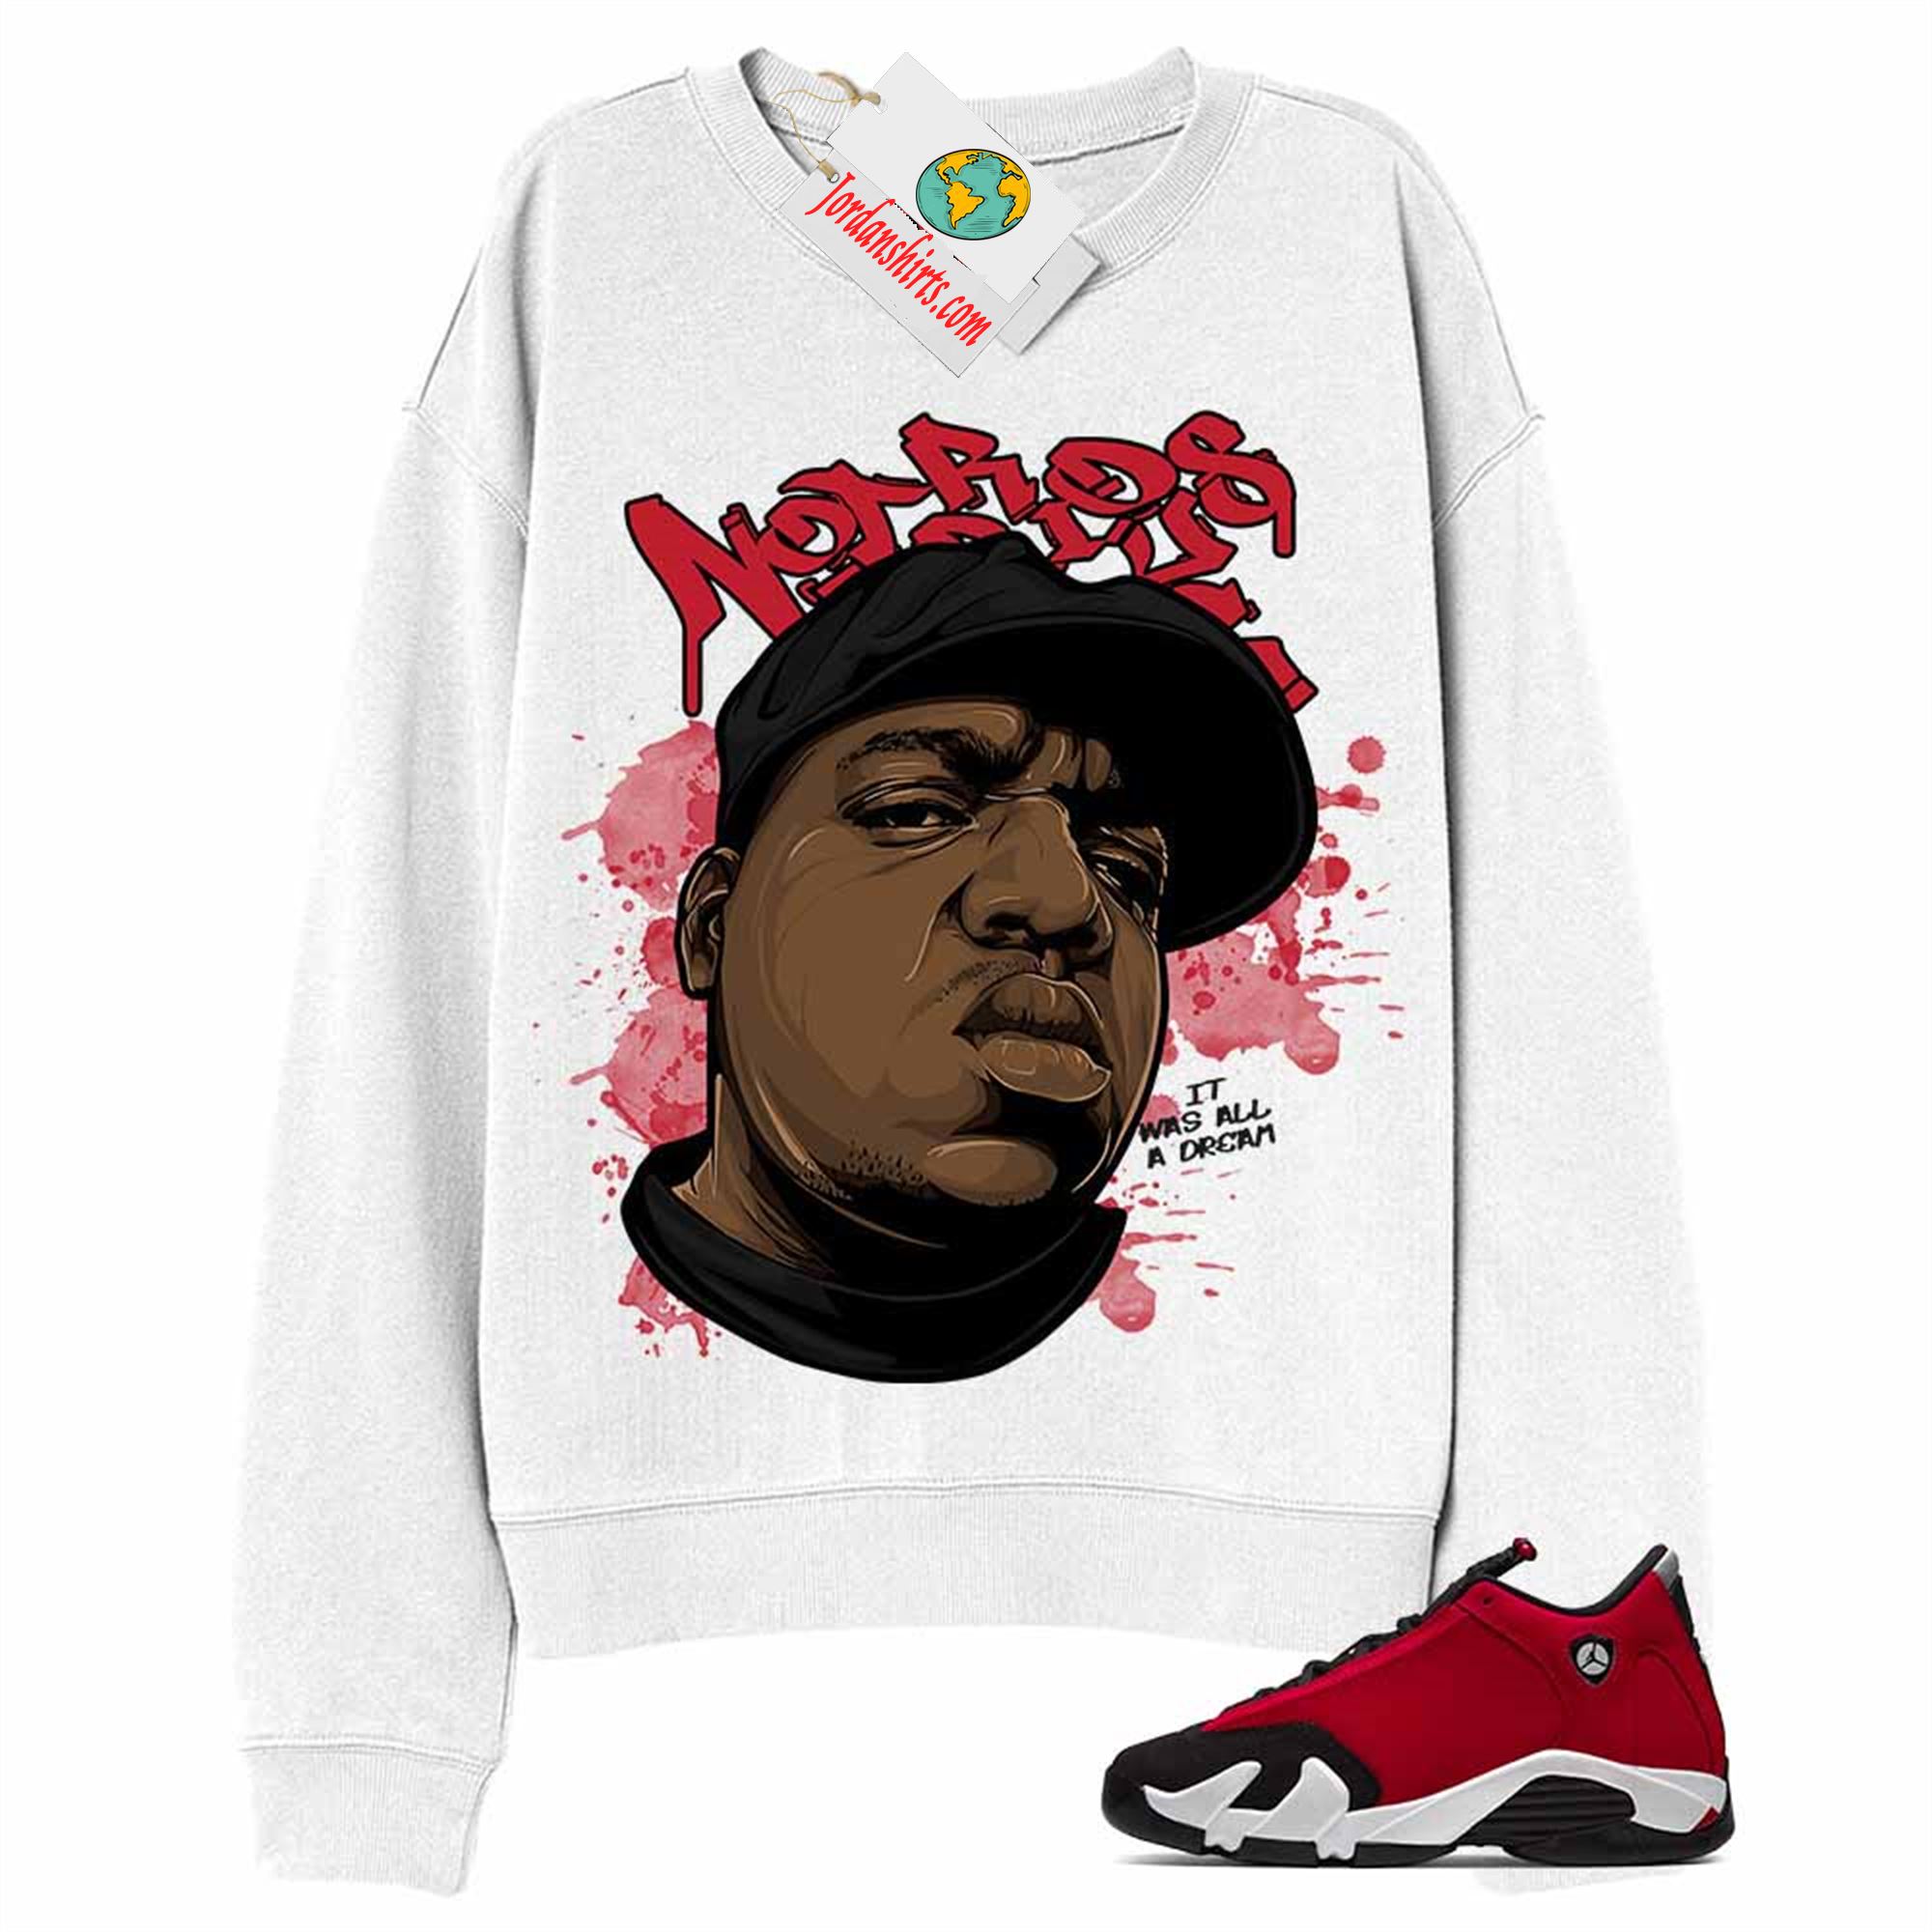 Jordan 14 Sweatshirt, Notorious Big White Sweatshirt Air Jordan 14 Gym Red 14s Plus Size Up To 5xl